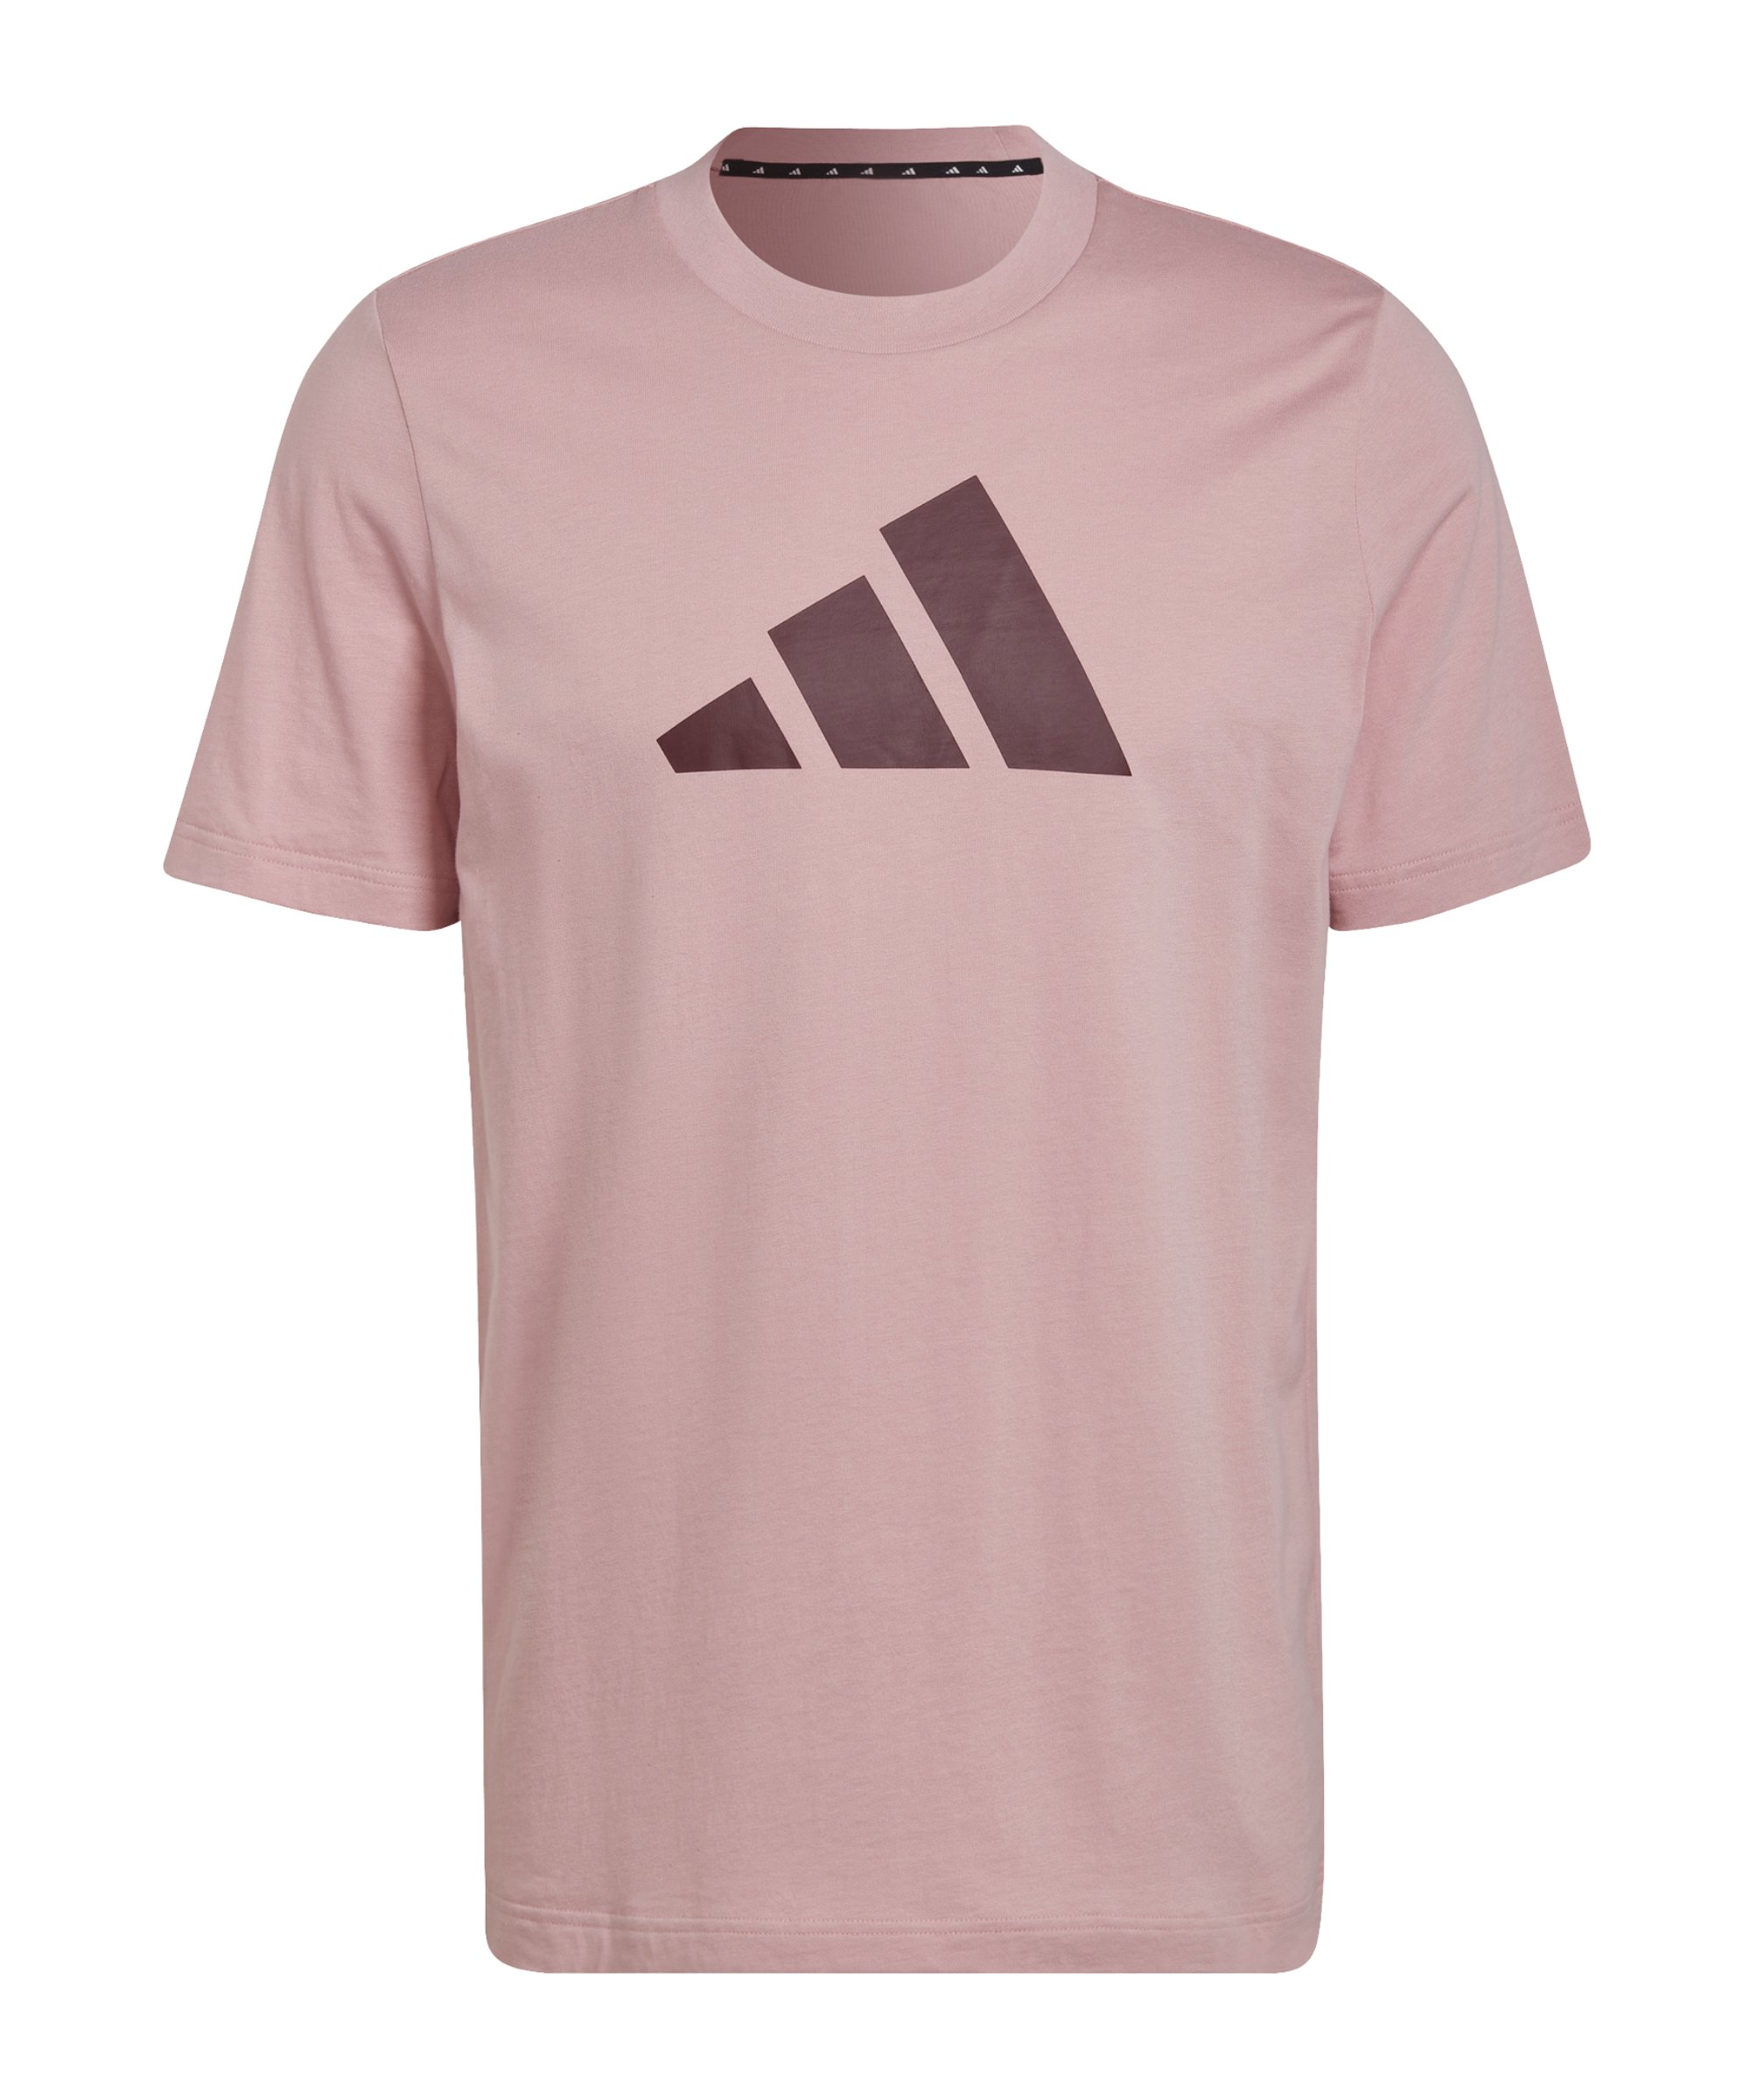 adidas Three Bar Future Icons T-Shirt Rosa - rosa